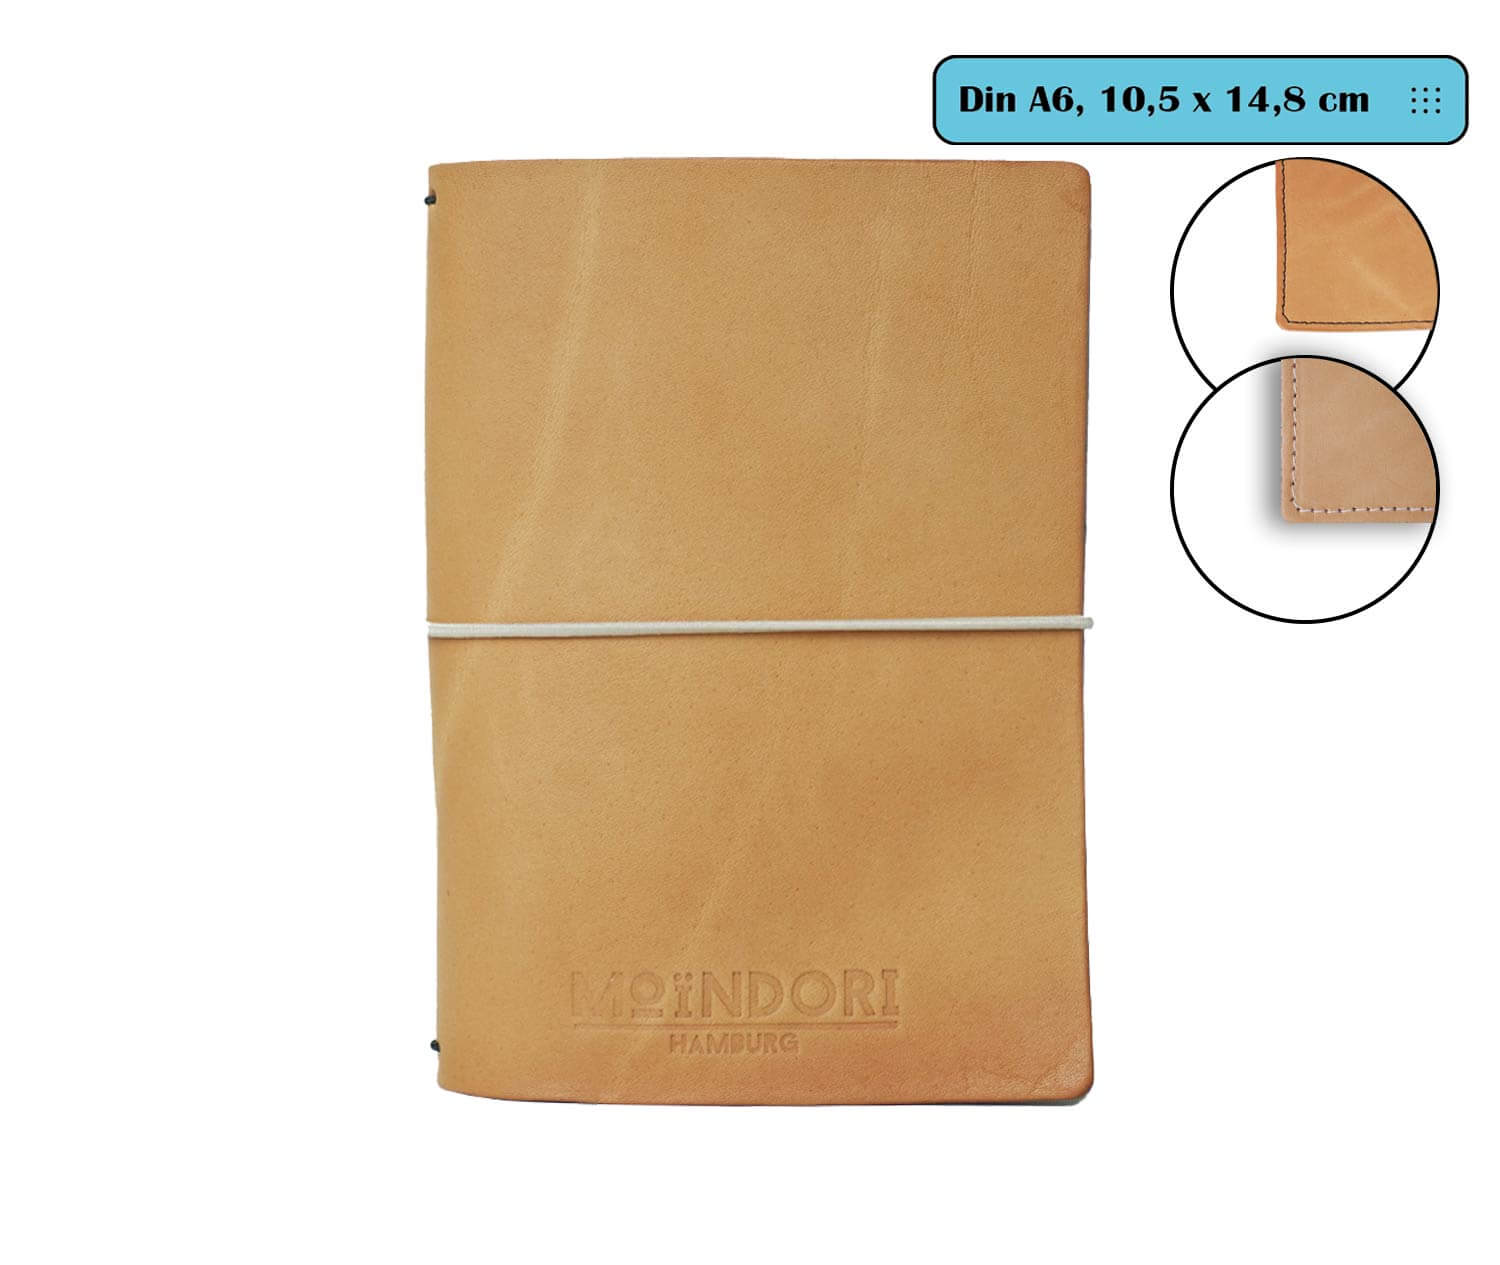 DIN A6 Travelers Notebook - Classic - Echtleder